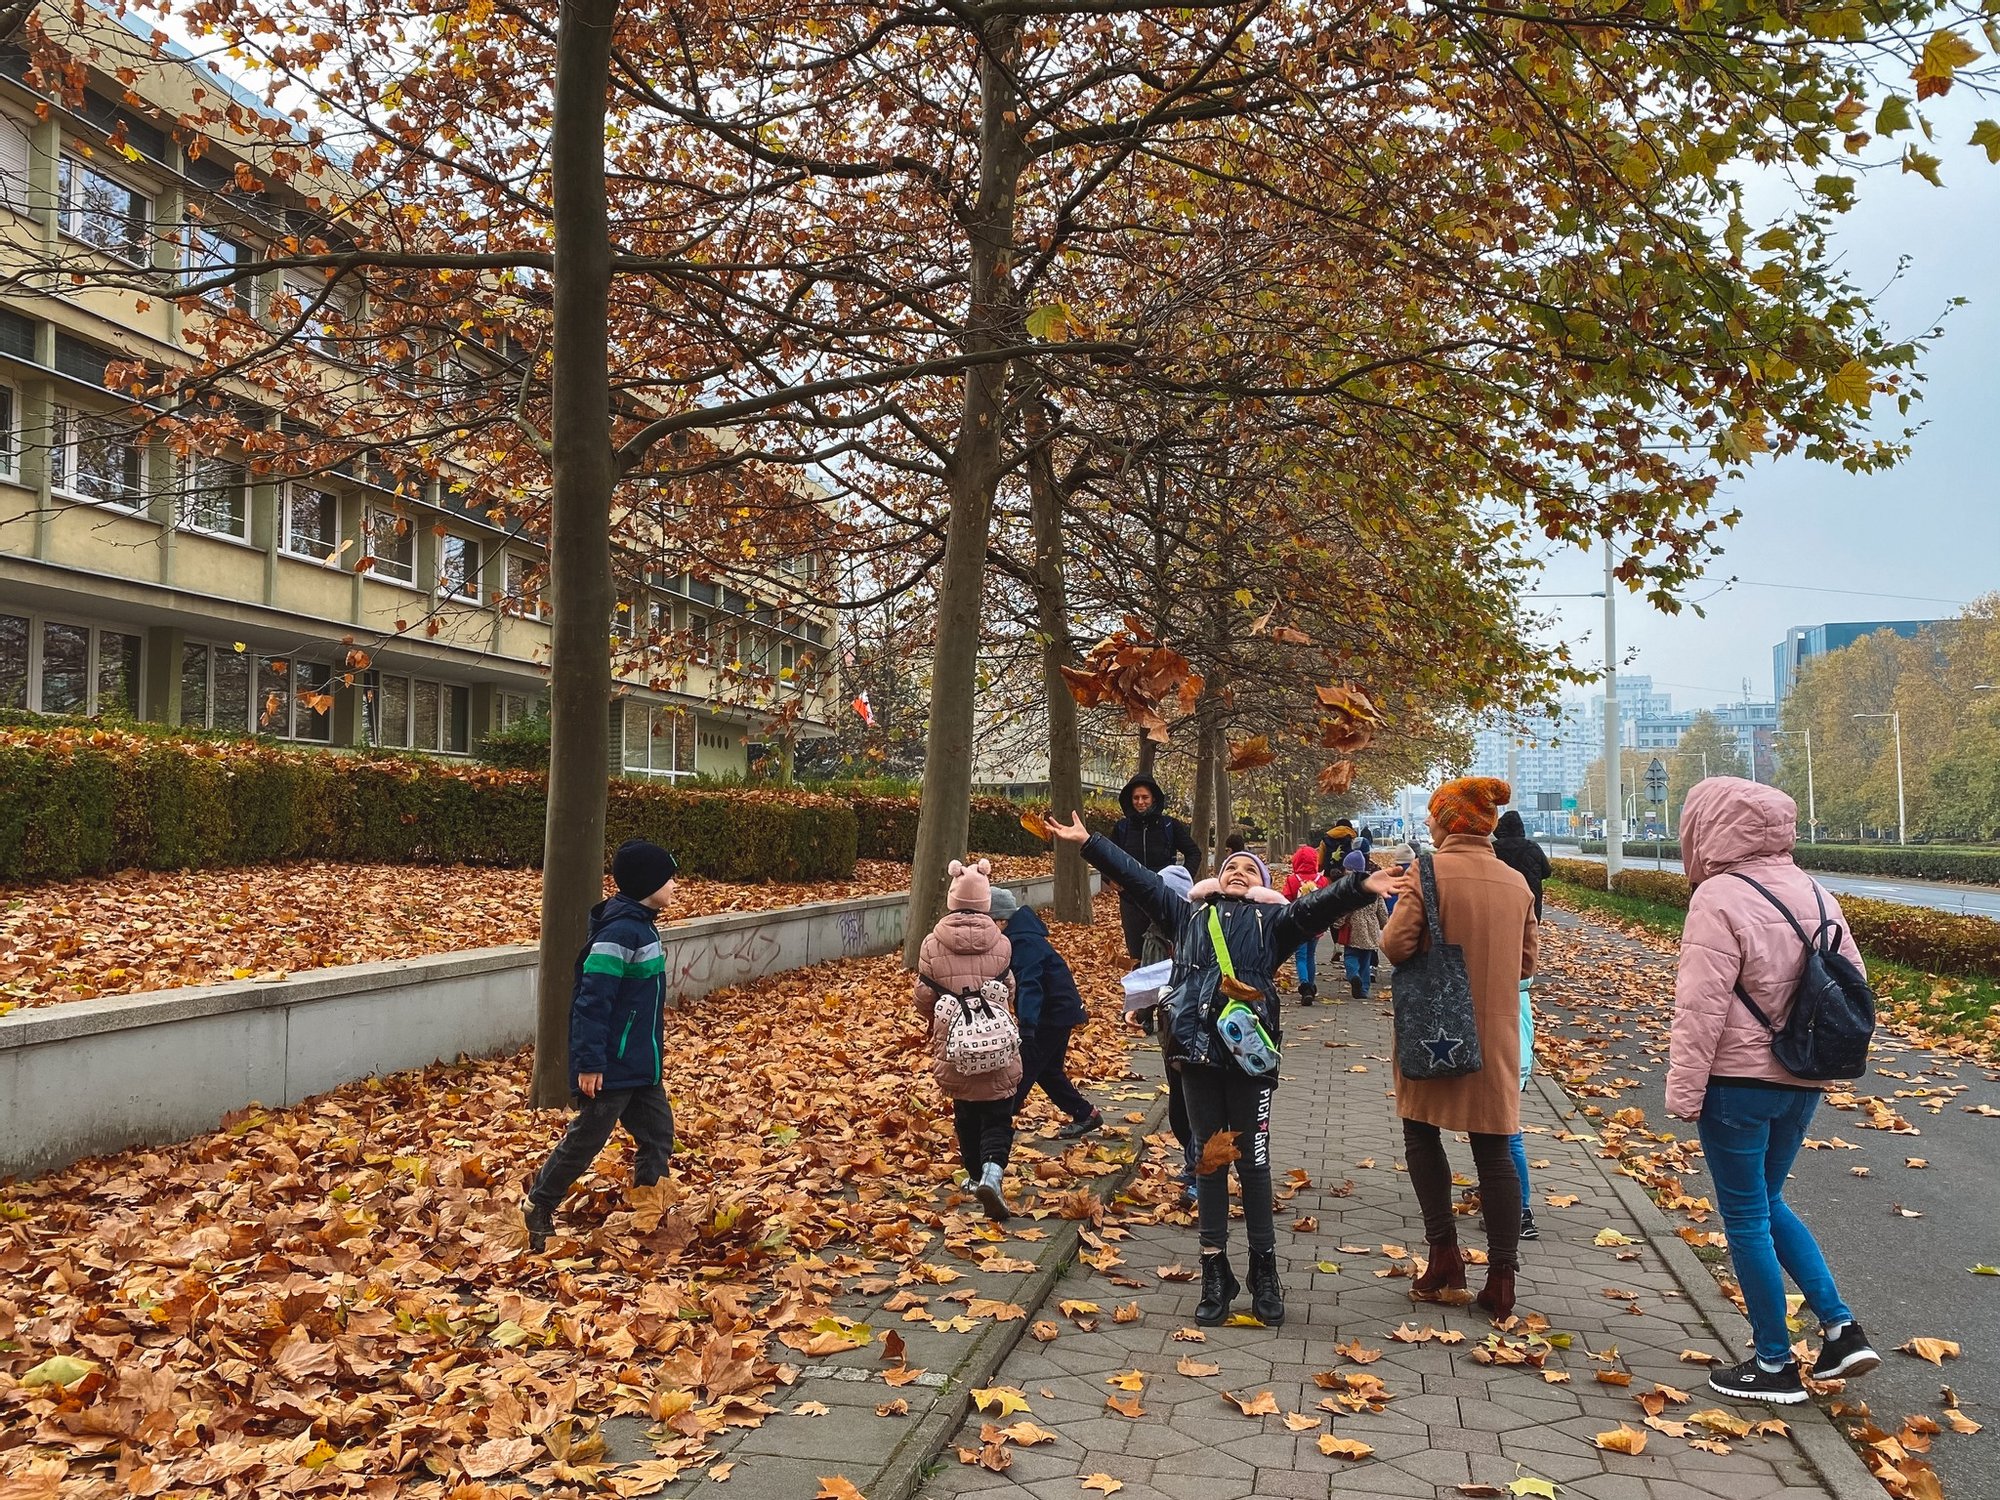 Grupa dzieciaków spaceruje chodnikiem zasypanym jesiennymi liśćmi. Jedna z dziewczynek podrzuca garść liści w powietrze. Trwa spacer po osiedlu.